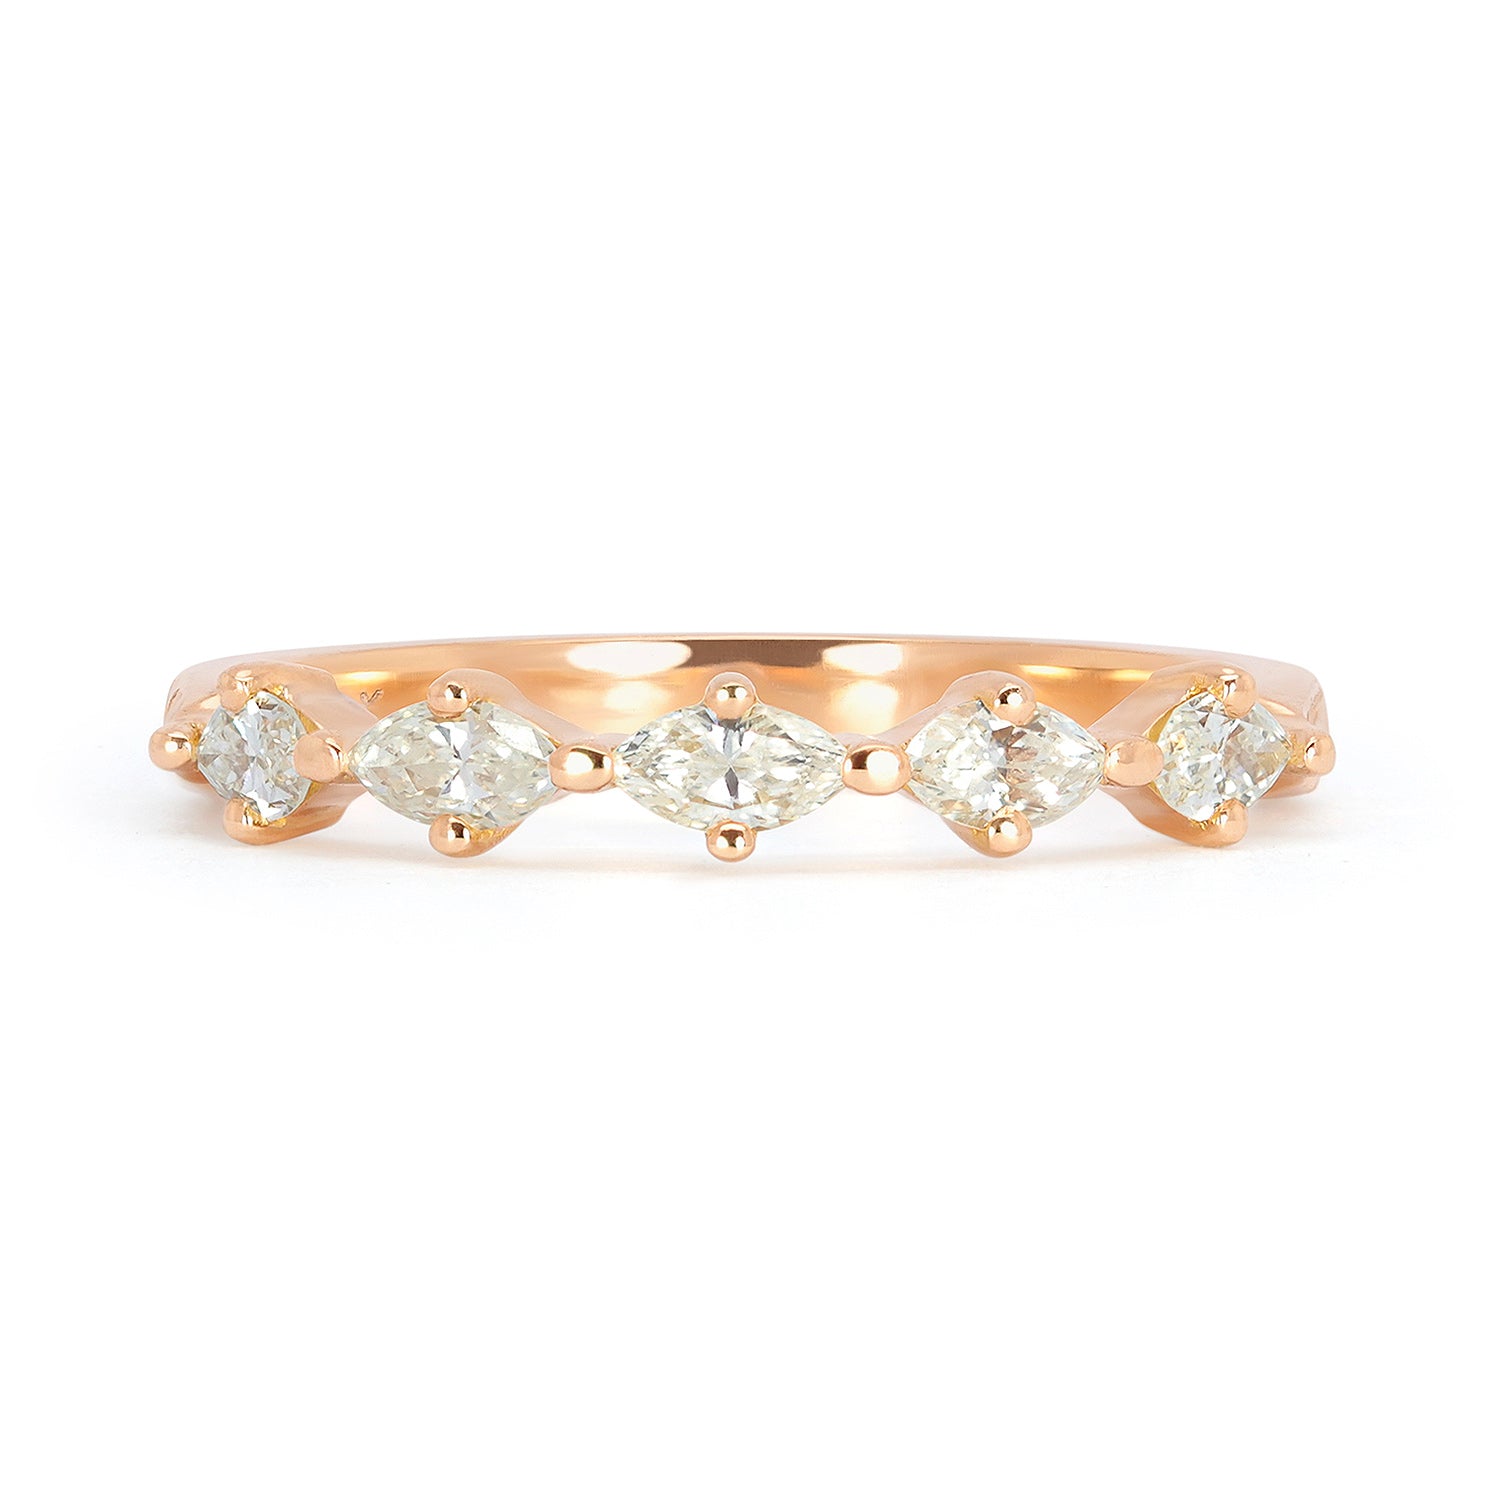 Bespoke Madeline Vintage Marquise Diamond Rose Gold Wedding Ring